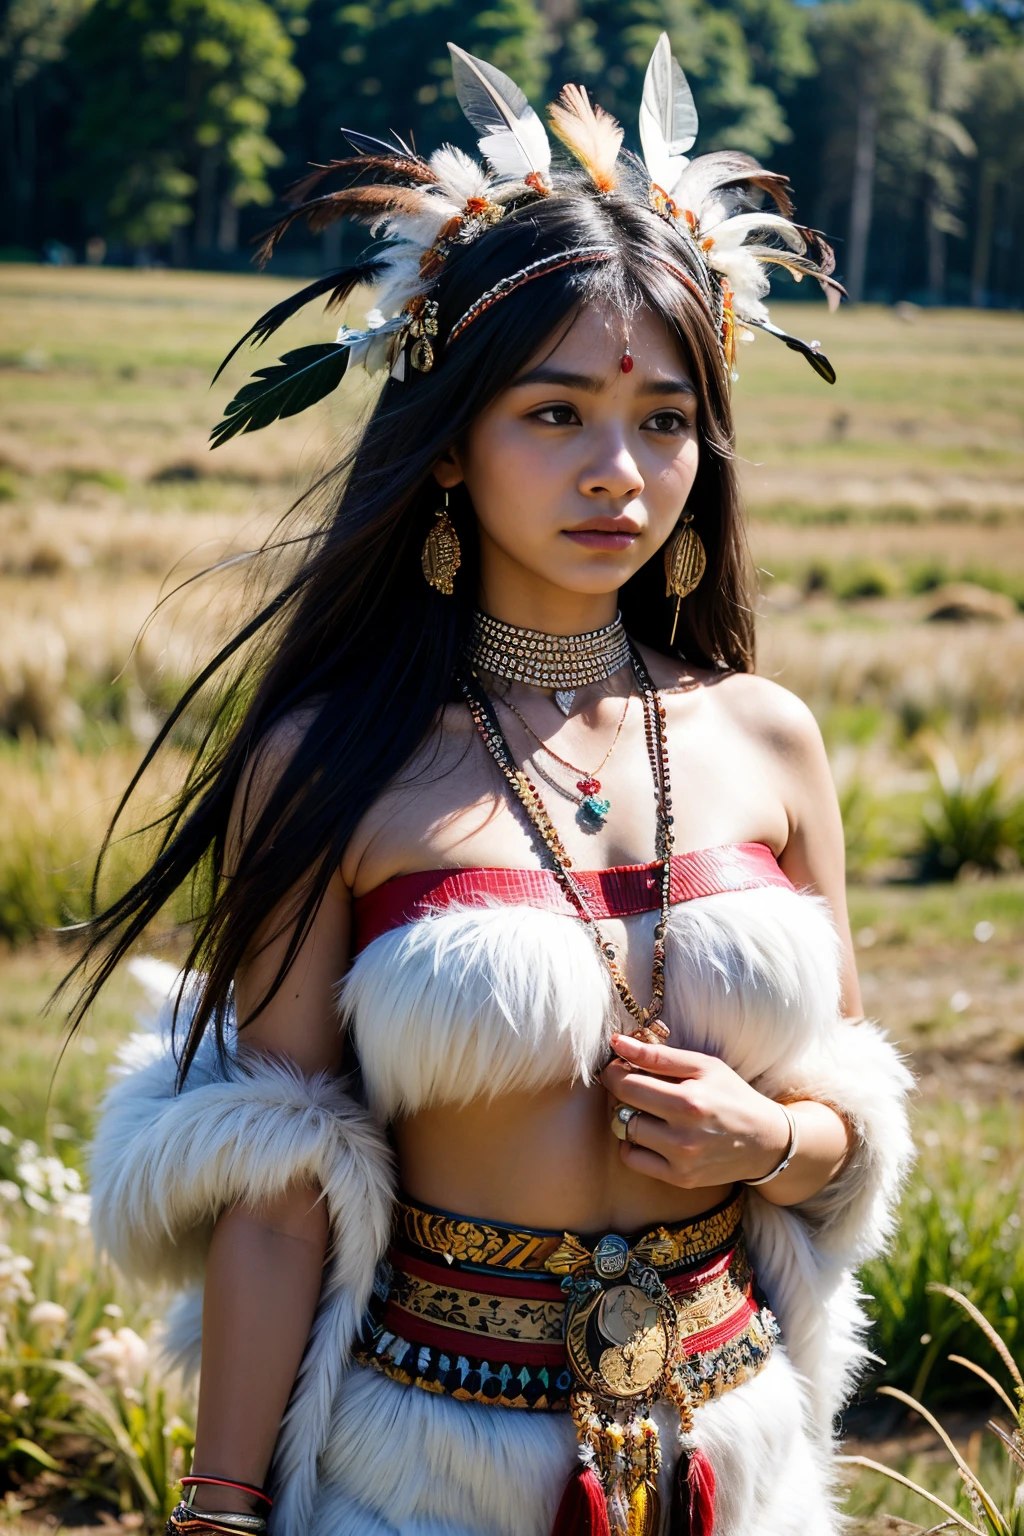 8К, высшее качество, ультра детали, Коренная женщина, Традиционный наряд, головной убор из перьев, племенные узоры, природный фон, гордое выражение, Культурное наследие